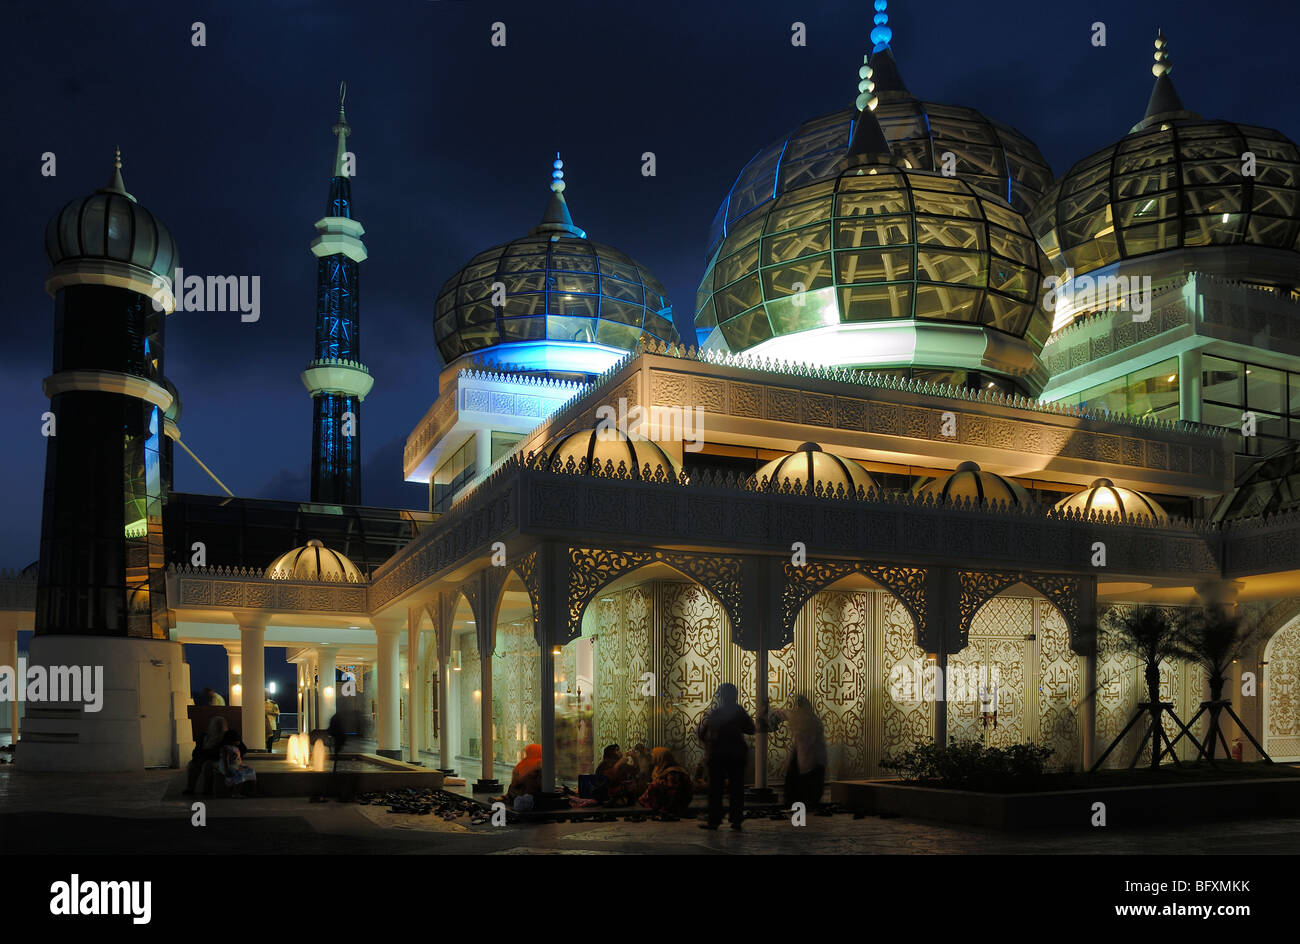 Mosquée éclairée, lumières nocturnes ou nuit à la Mosquée transparente en cristal de verre (2006-08) ou Masjid Kristal, Kuala Terengganu, Malaisie Banque D'Images